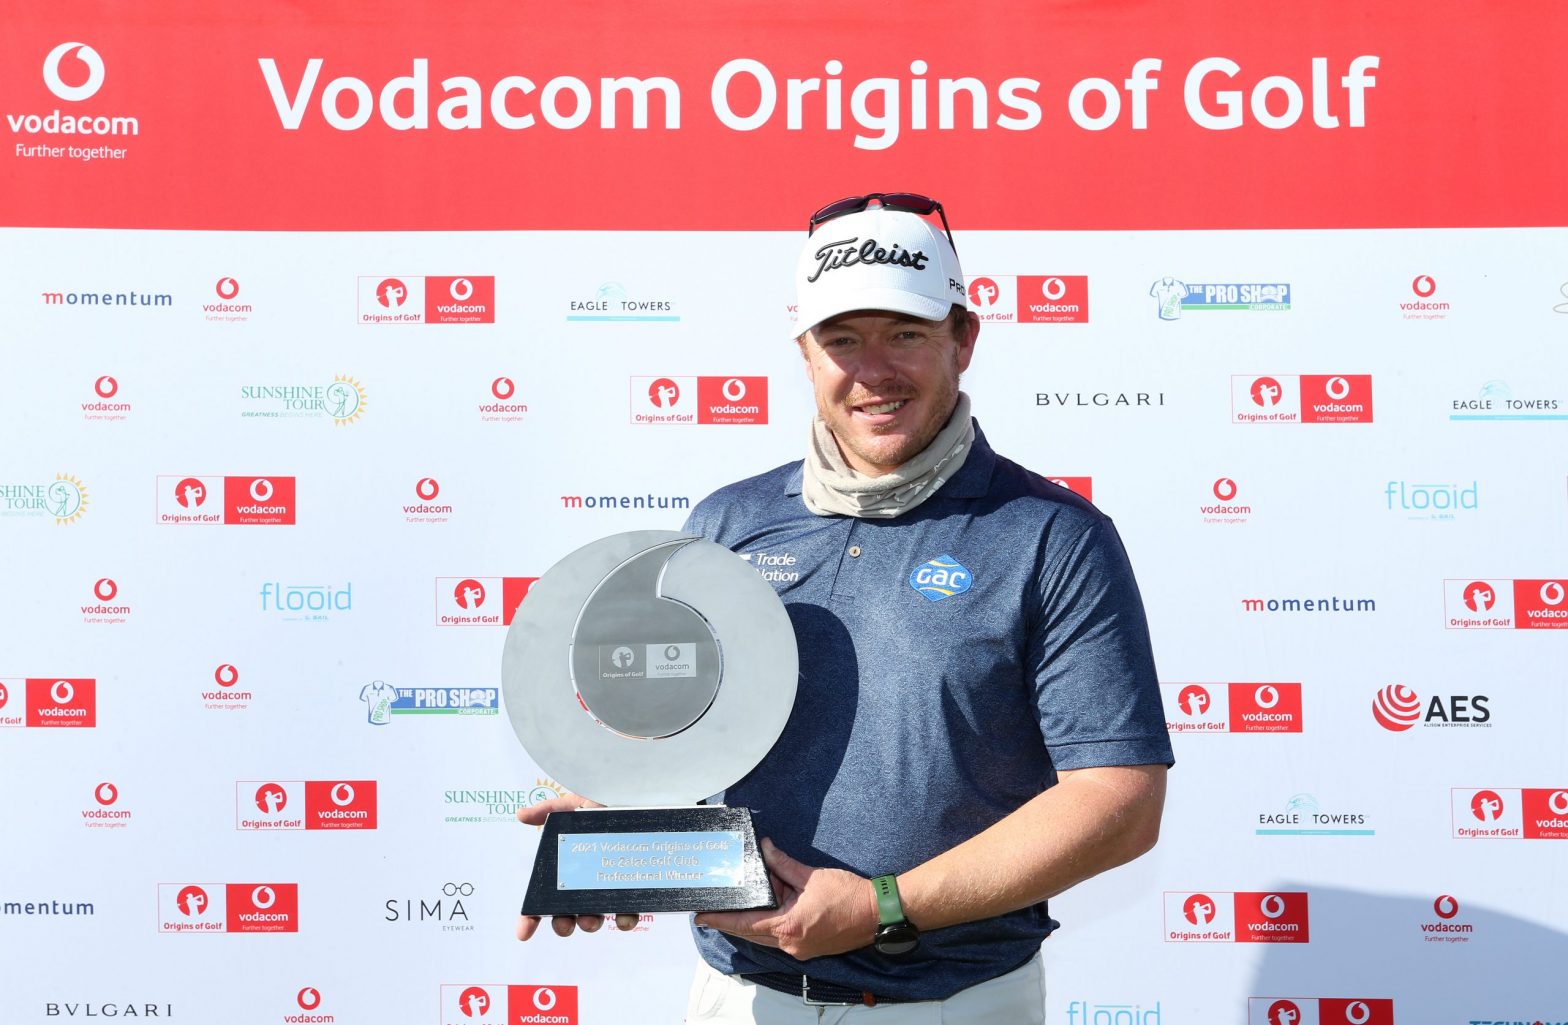 Coetzee wins Vodacom Origins opener